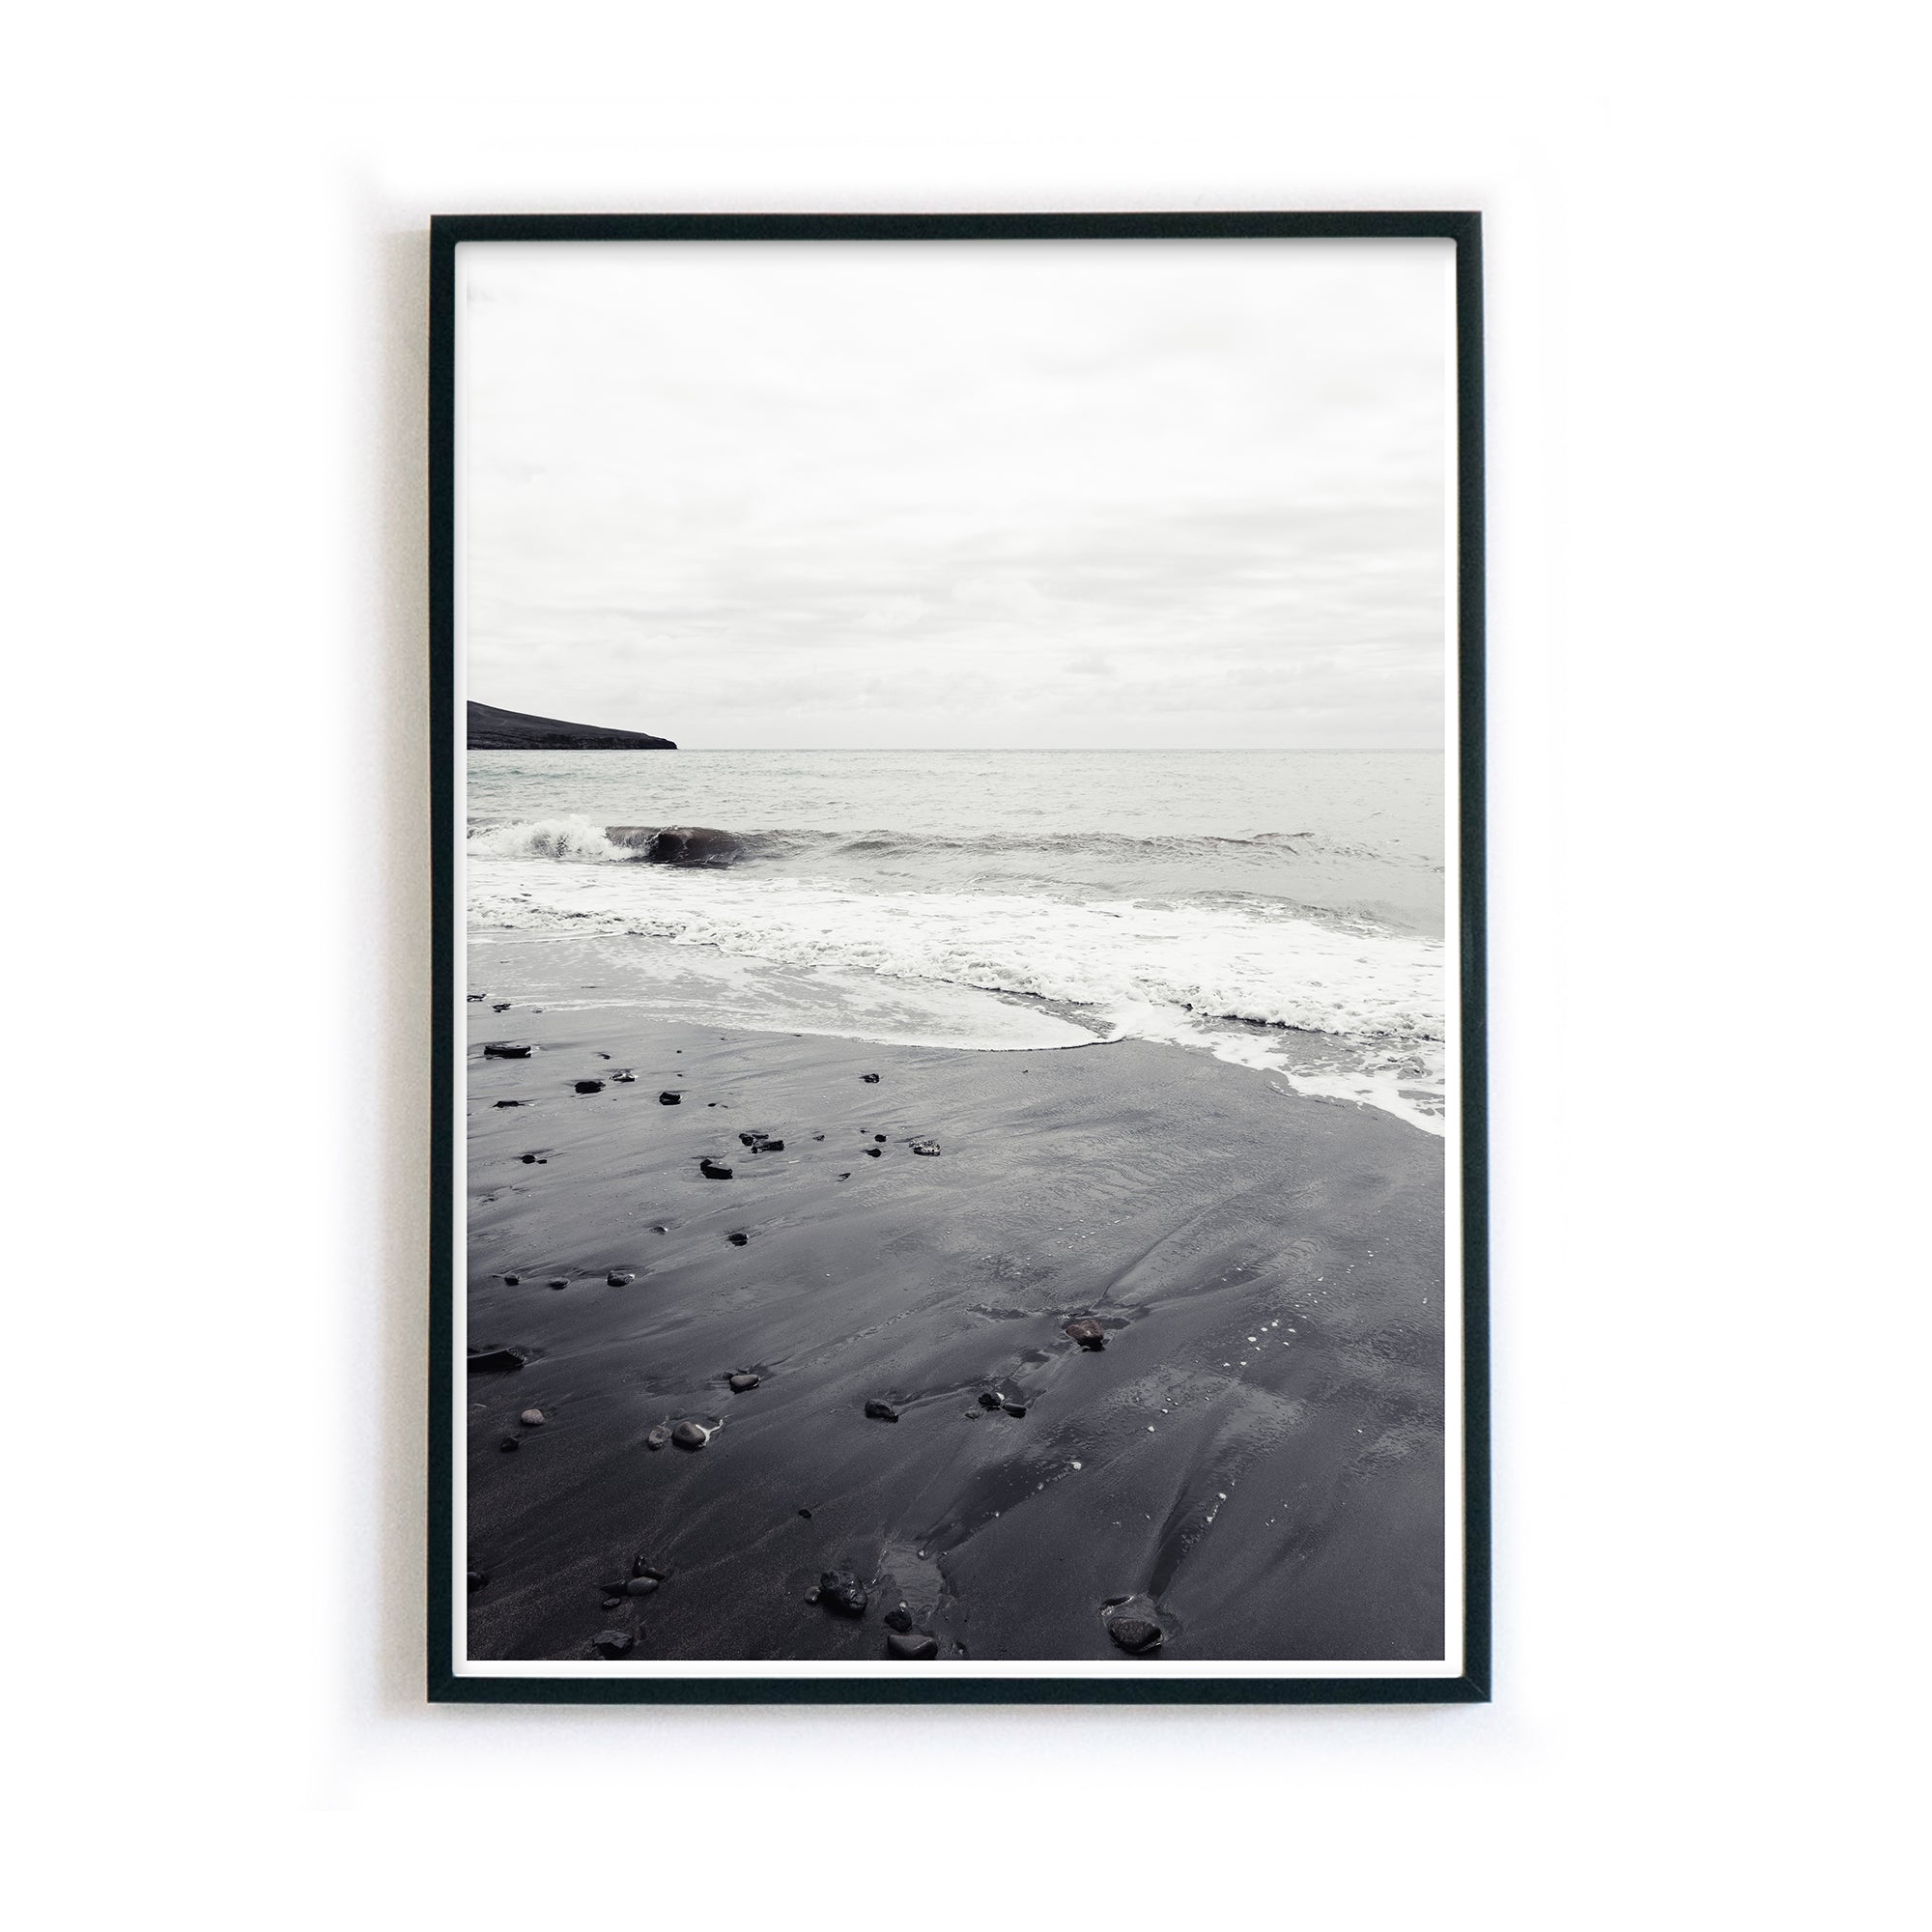 4one-Pictures-poster-natur-schwarz-weiss-strand-sand-wellen-meer-beach-bilderrahmen_a61cc048-5806-4990-a93f-3aea6e127746.jpg